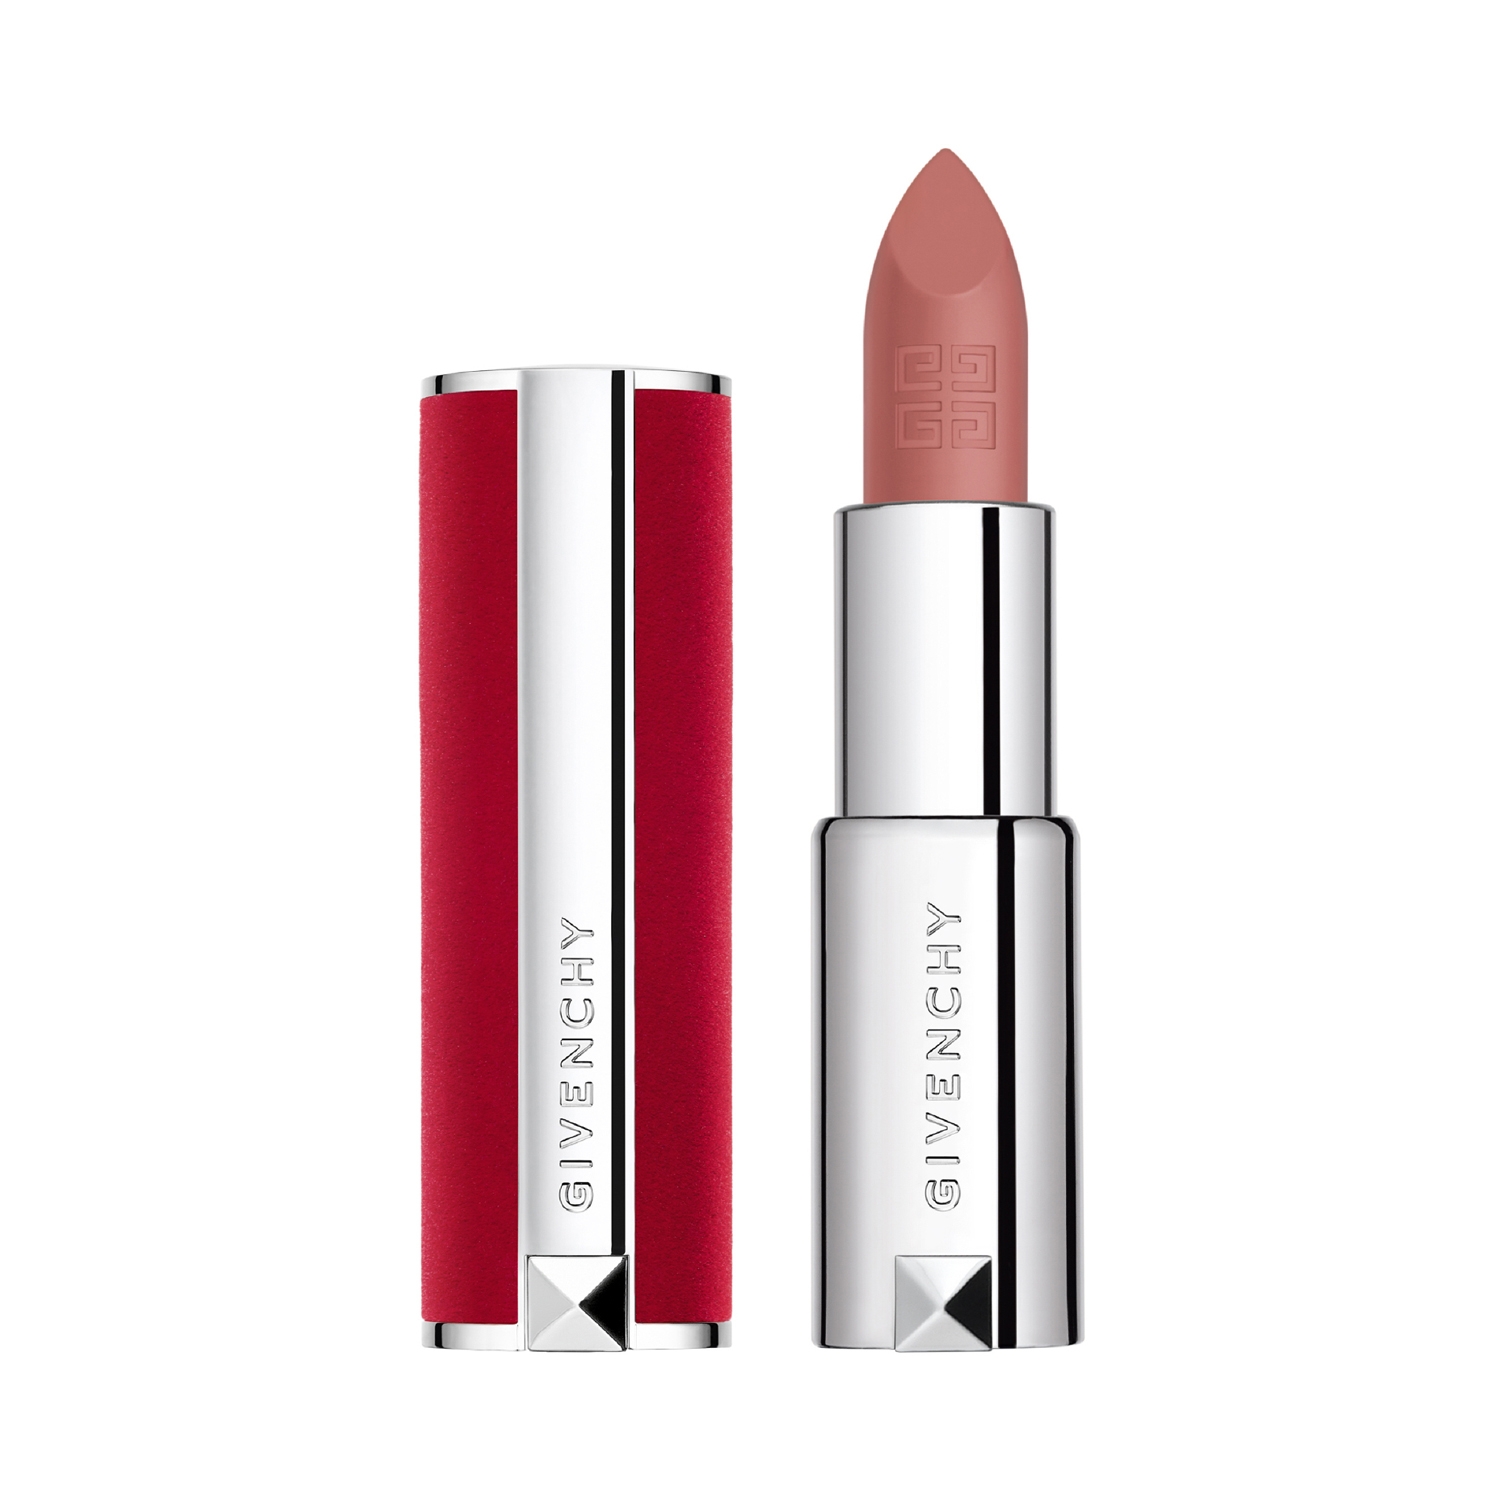 Givenchy Le Rouge Deep Velvet Lipstick - N 10 Beige Nu (3.4g)